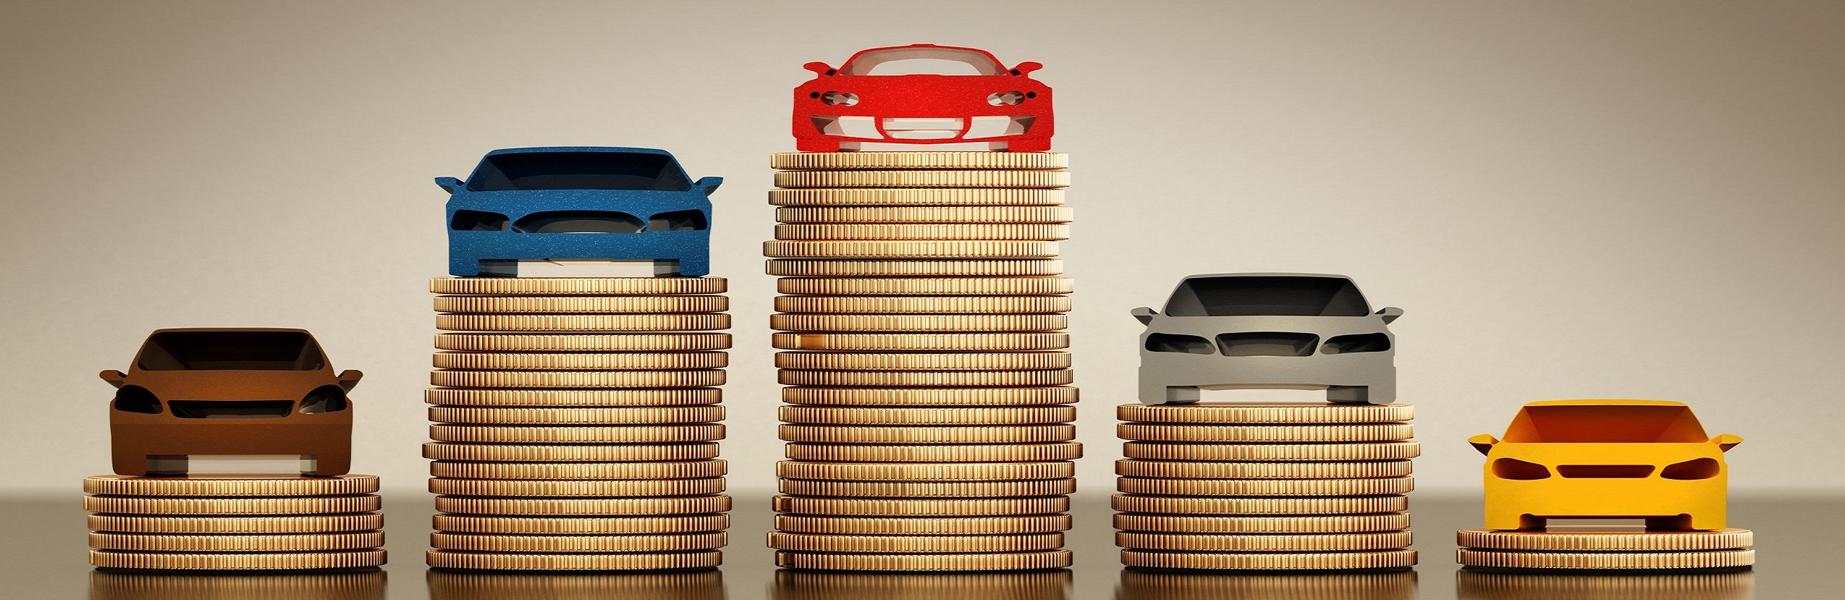 KFZ Steuer Erhoehung Kosten Abgas Erhoehung 1 Die Umschlüsselung vom Auto kann Kfz Steuer sparen!